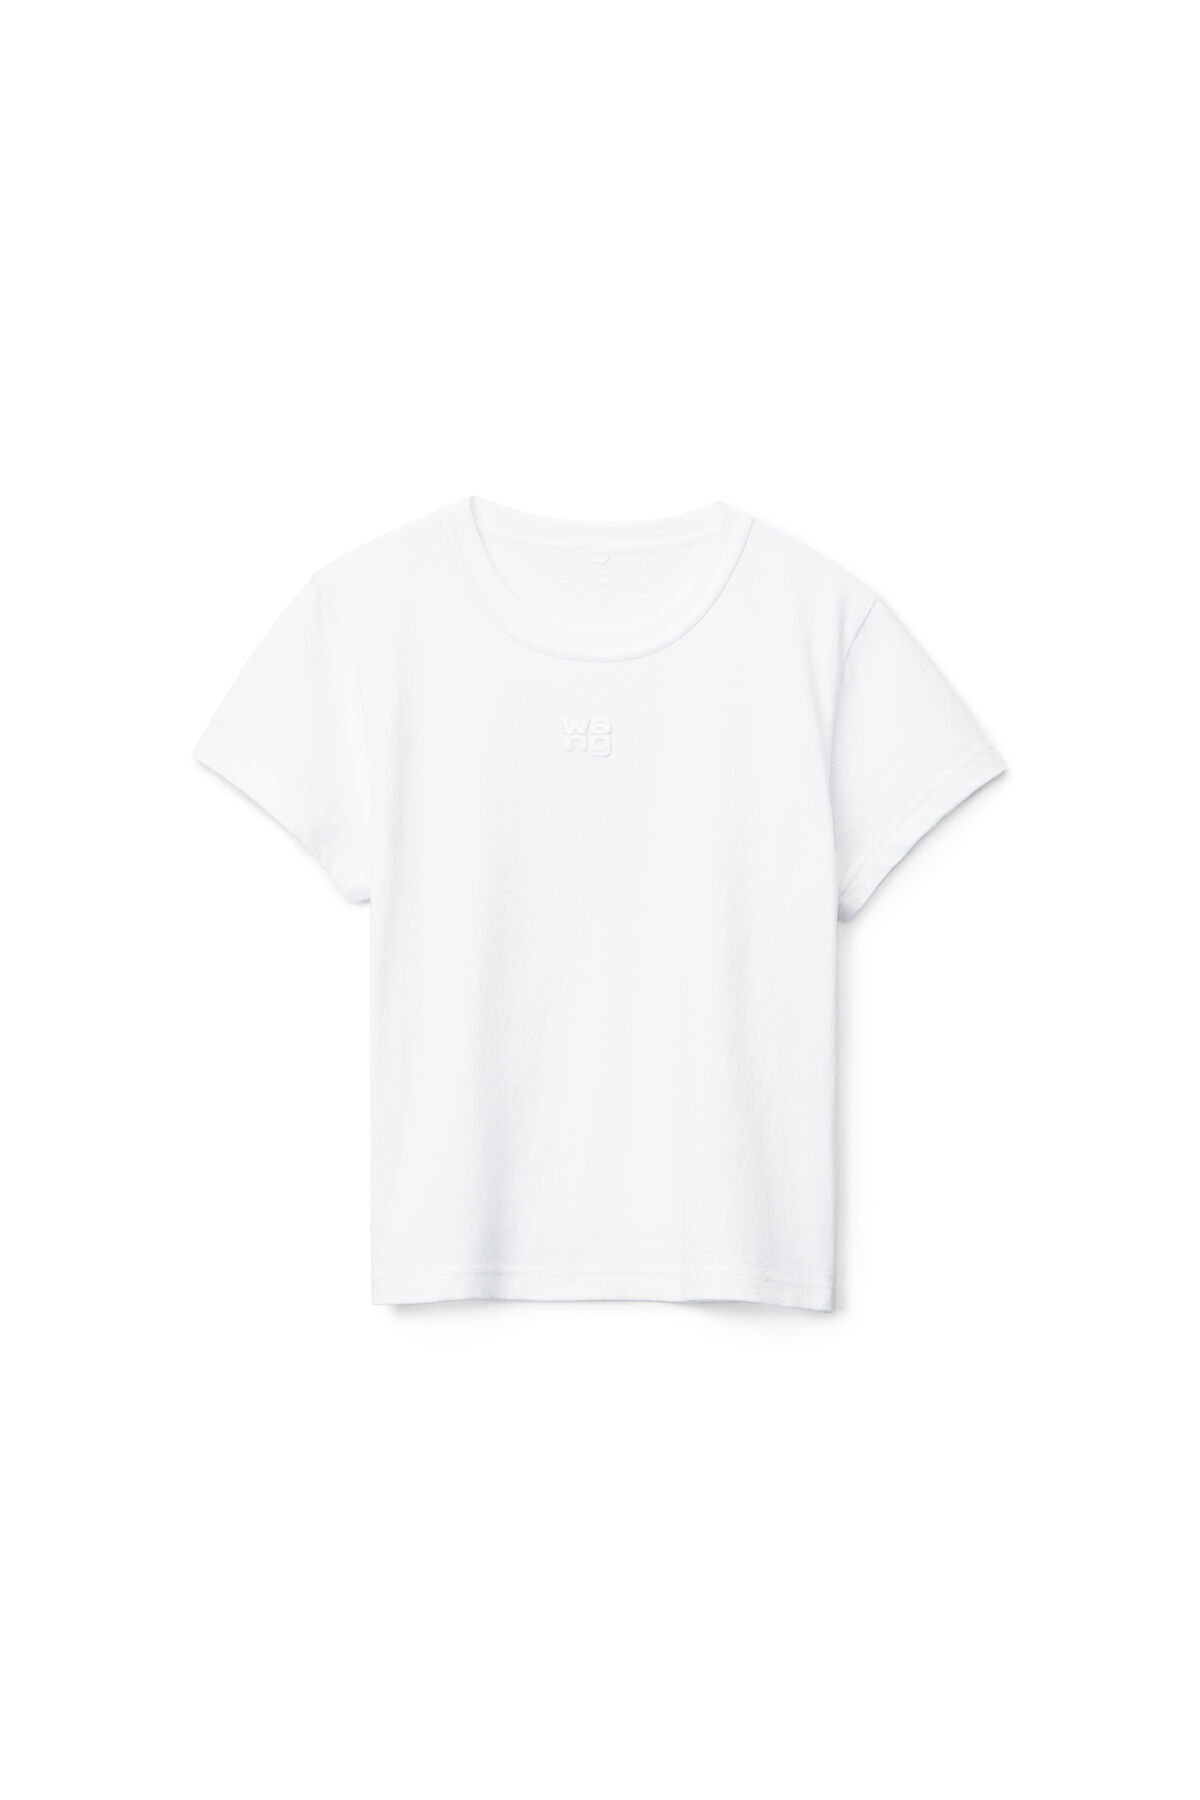 T-Shirt SGOTTER Scheisse Größe: M dunkelgrau Front Print 100